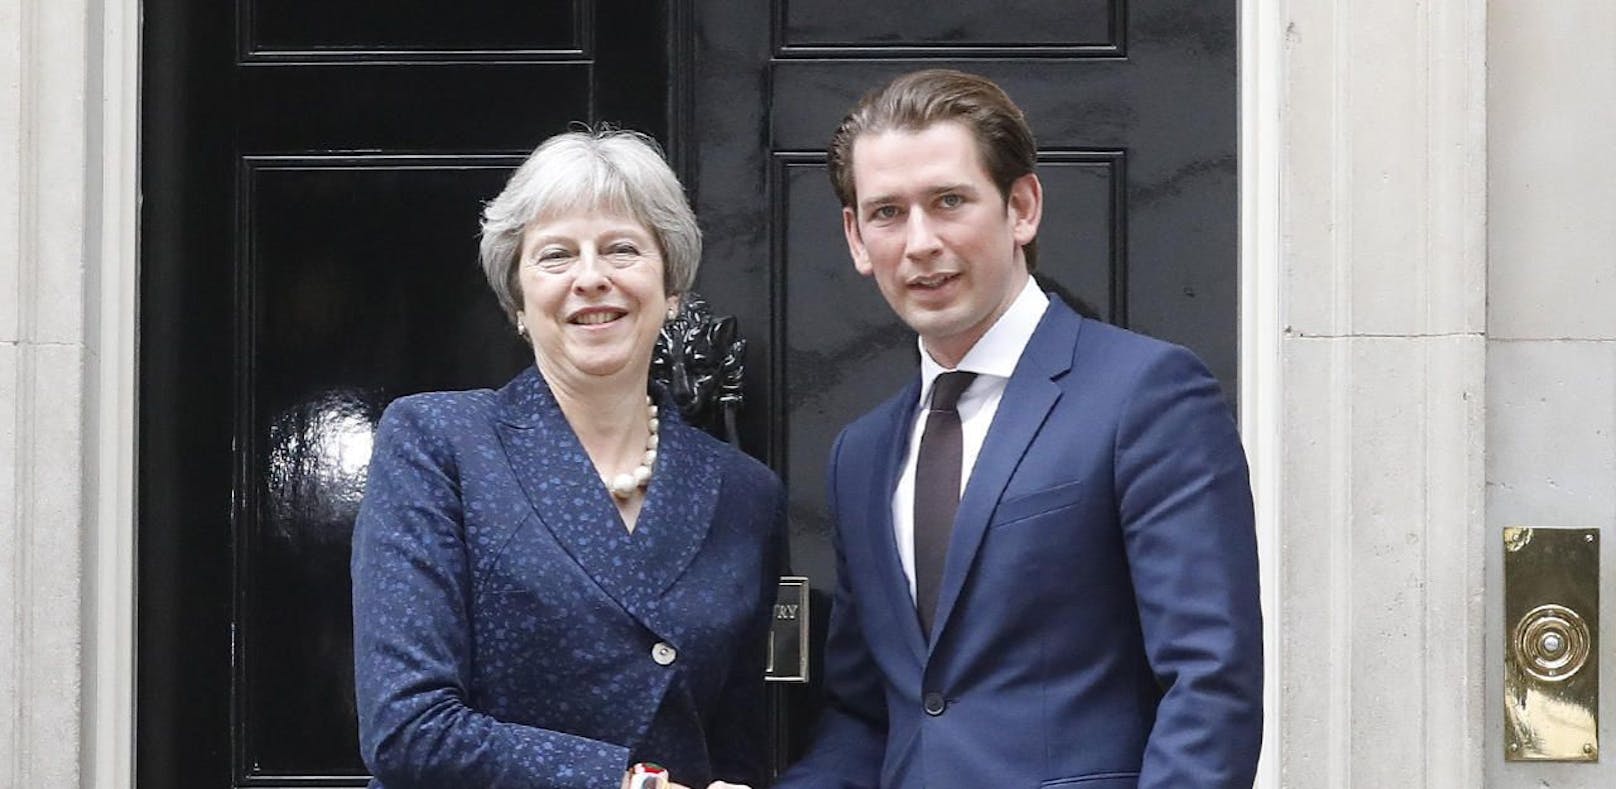 Bundeskanzler Sebastian Kurz (ÖVP) trifft in London auf die britische Premierministerin Theresa May. 